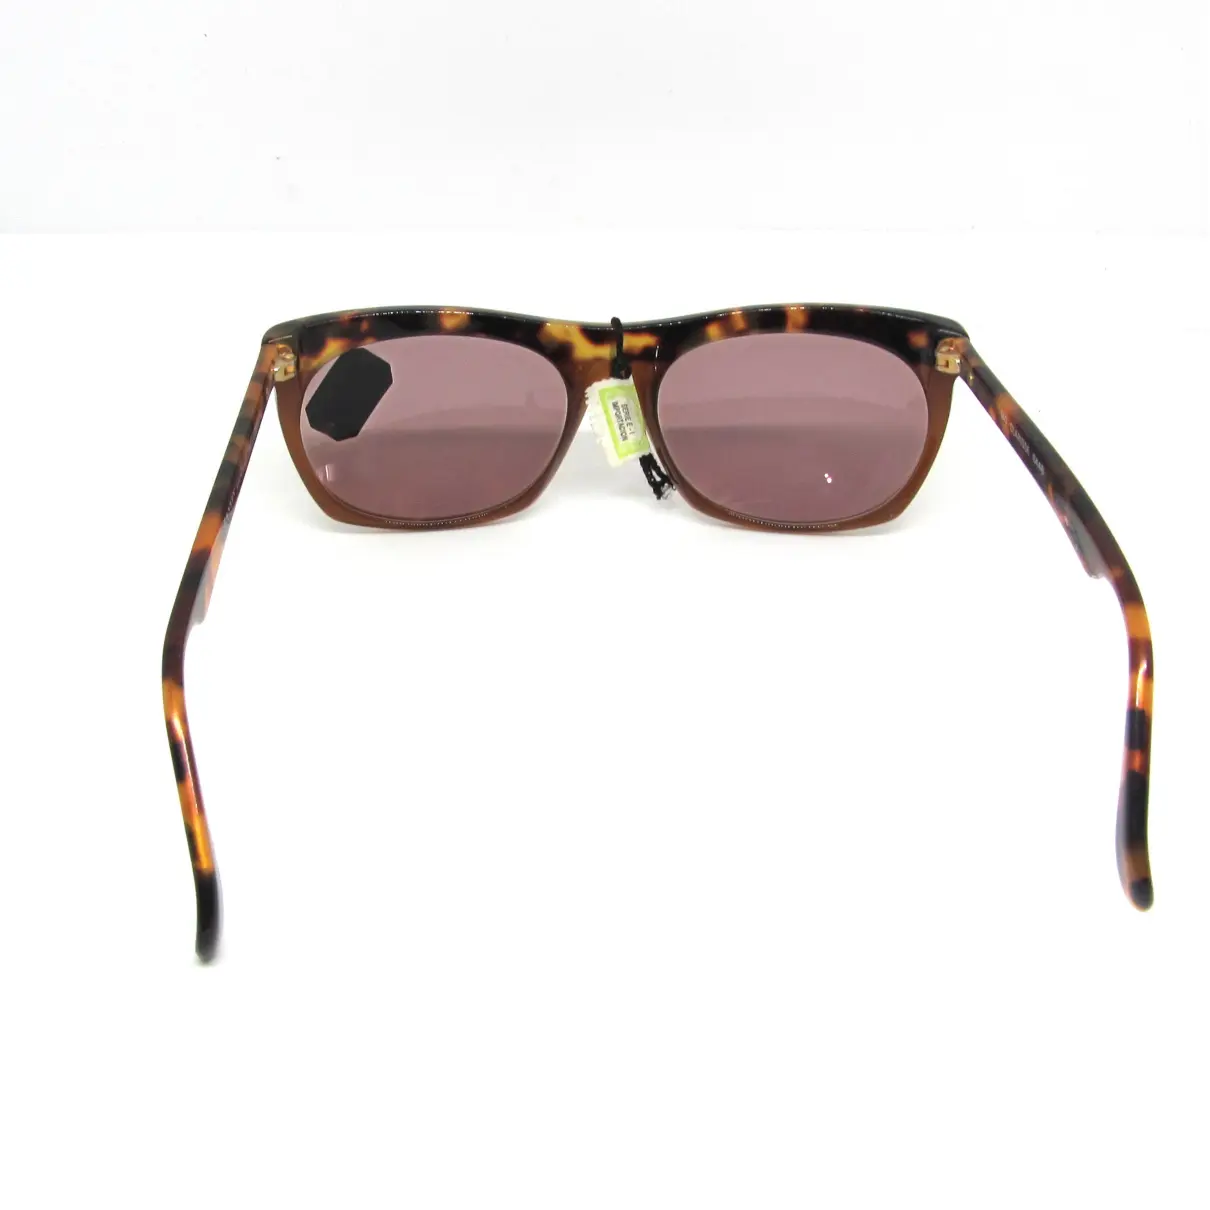 Sunglasses Lanvin - Vintage